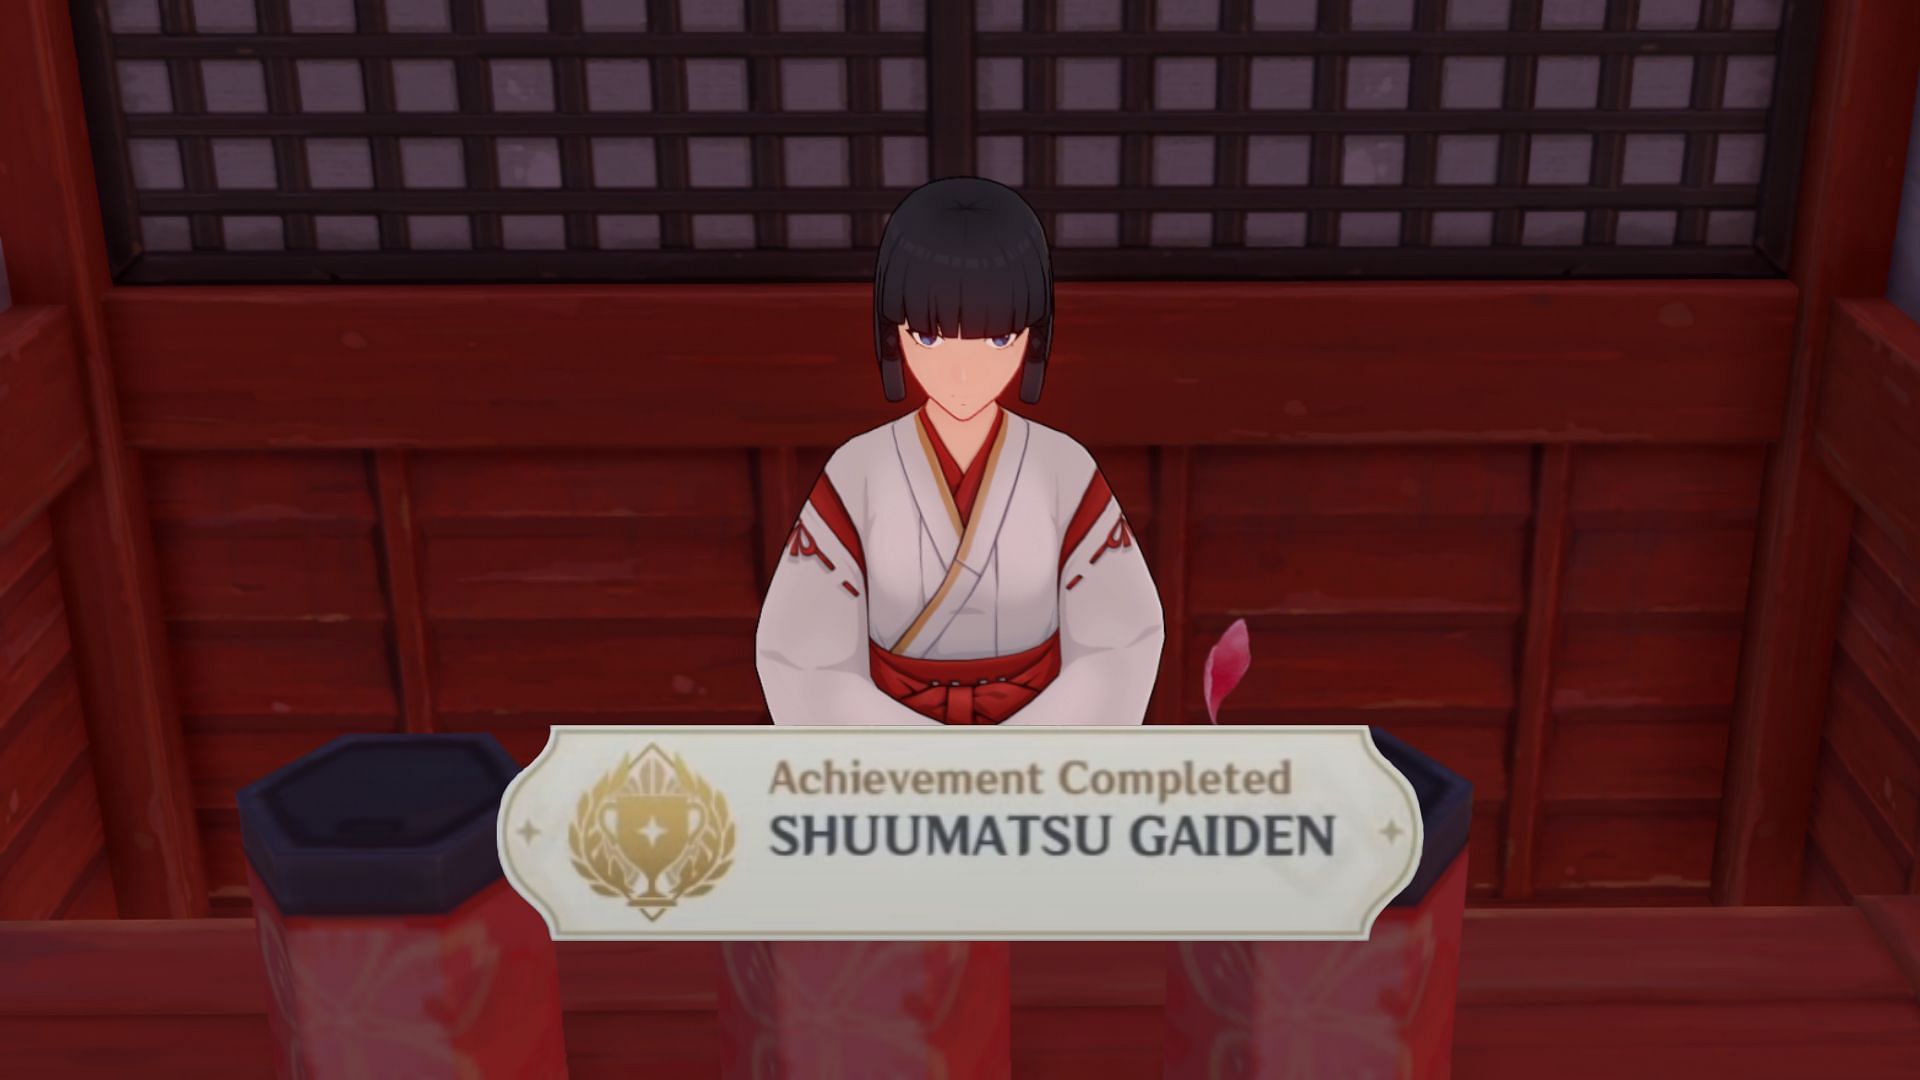 Getting the Shuumatsu Gaiden achievement will take a while for Genshin Impact players (Image via miHoYo)